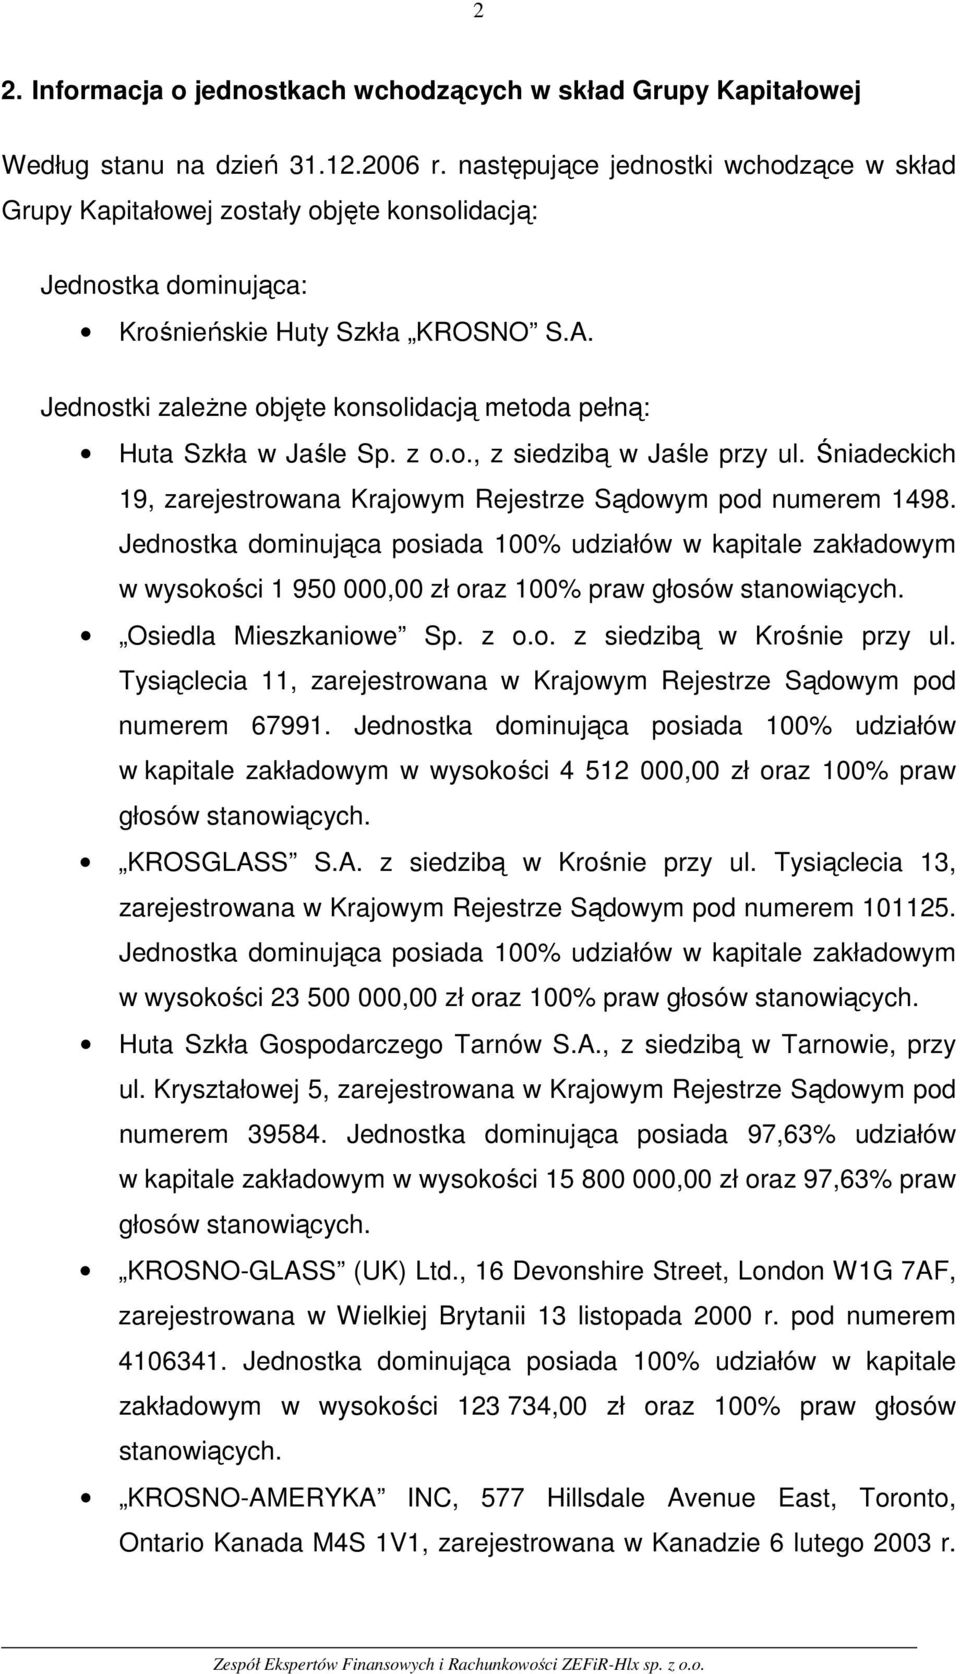 Jednostki zależne objęte konsolidacją metoda pełną: Huta Szkła w Jaśle Sp. z o.o., z siedzibą w Jaśle przy ul. Śniadeckich 19, zarejestrowana Krajowym Rejestrze Sądowym pod numerem 1498.